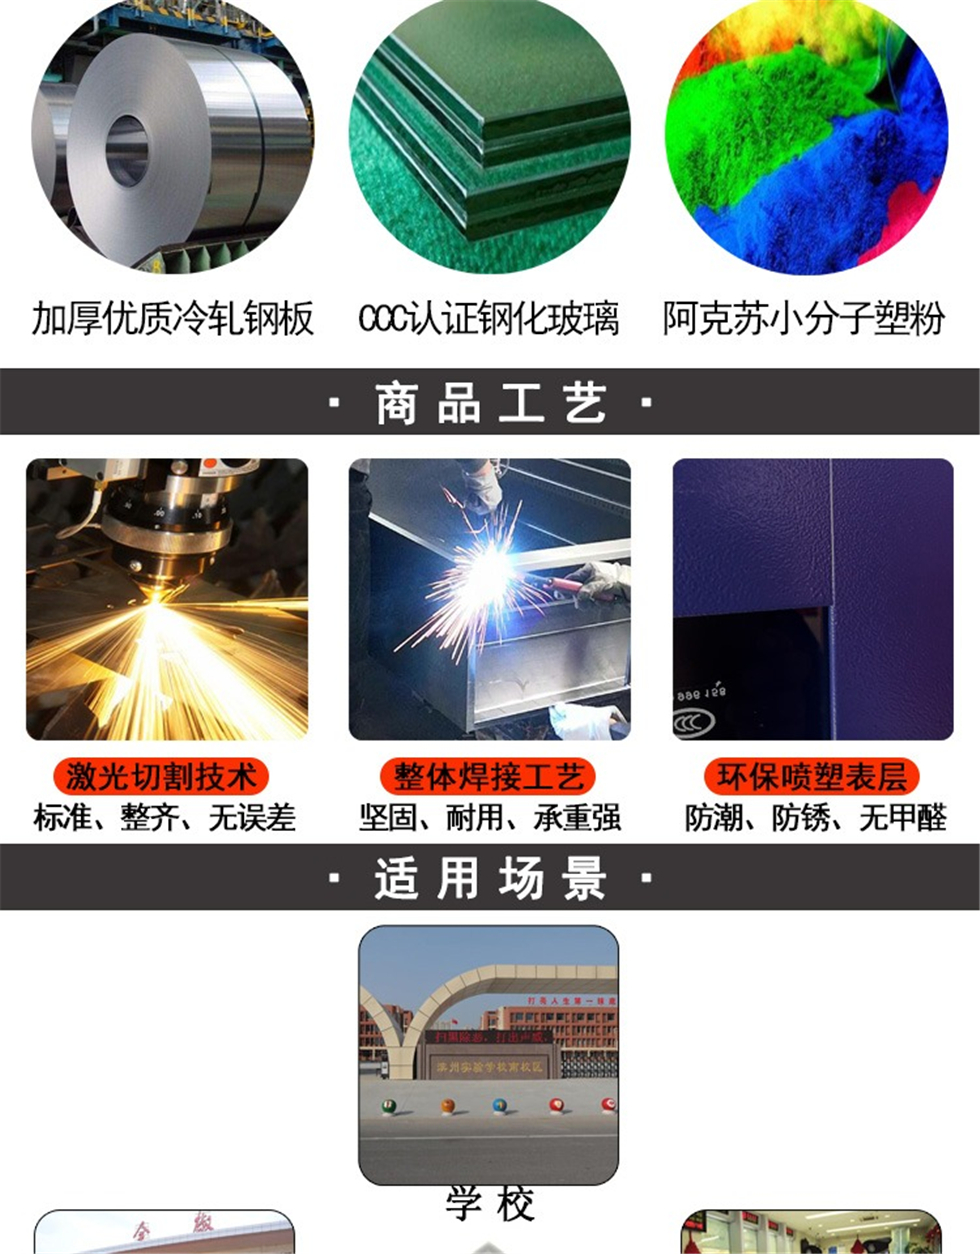 深圳智能充电柜生产 欢迎咨询